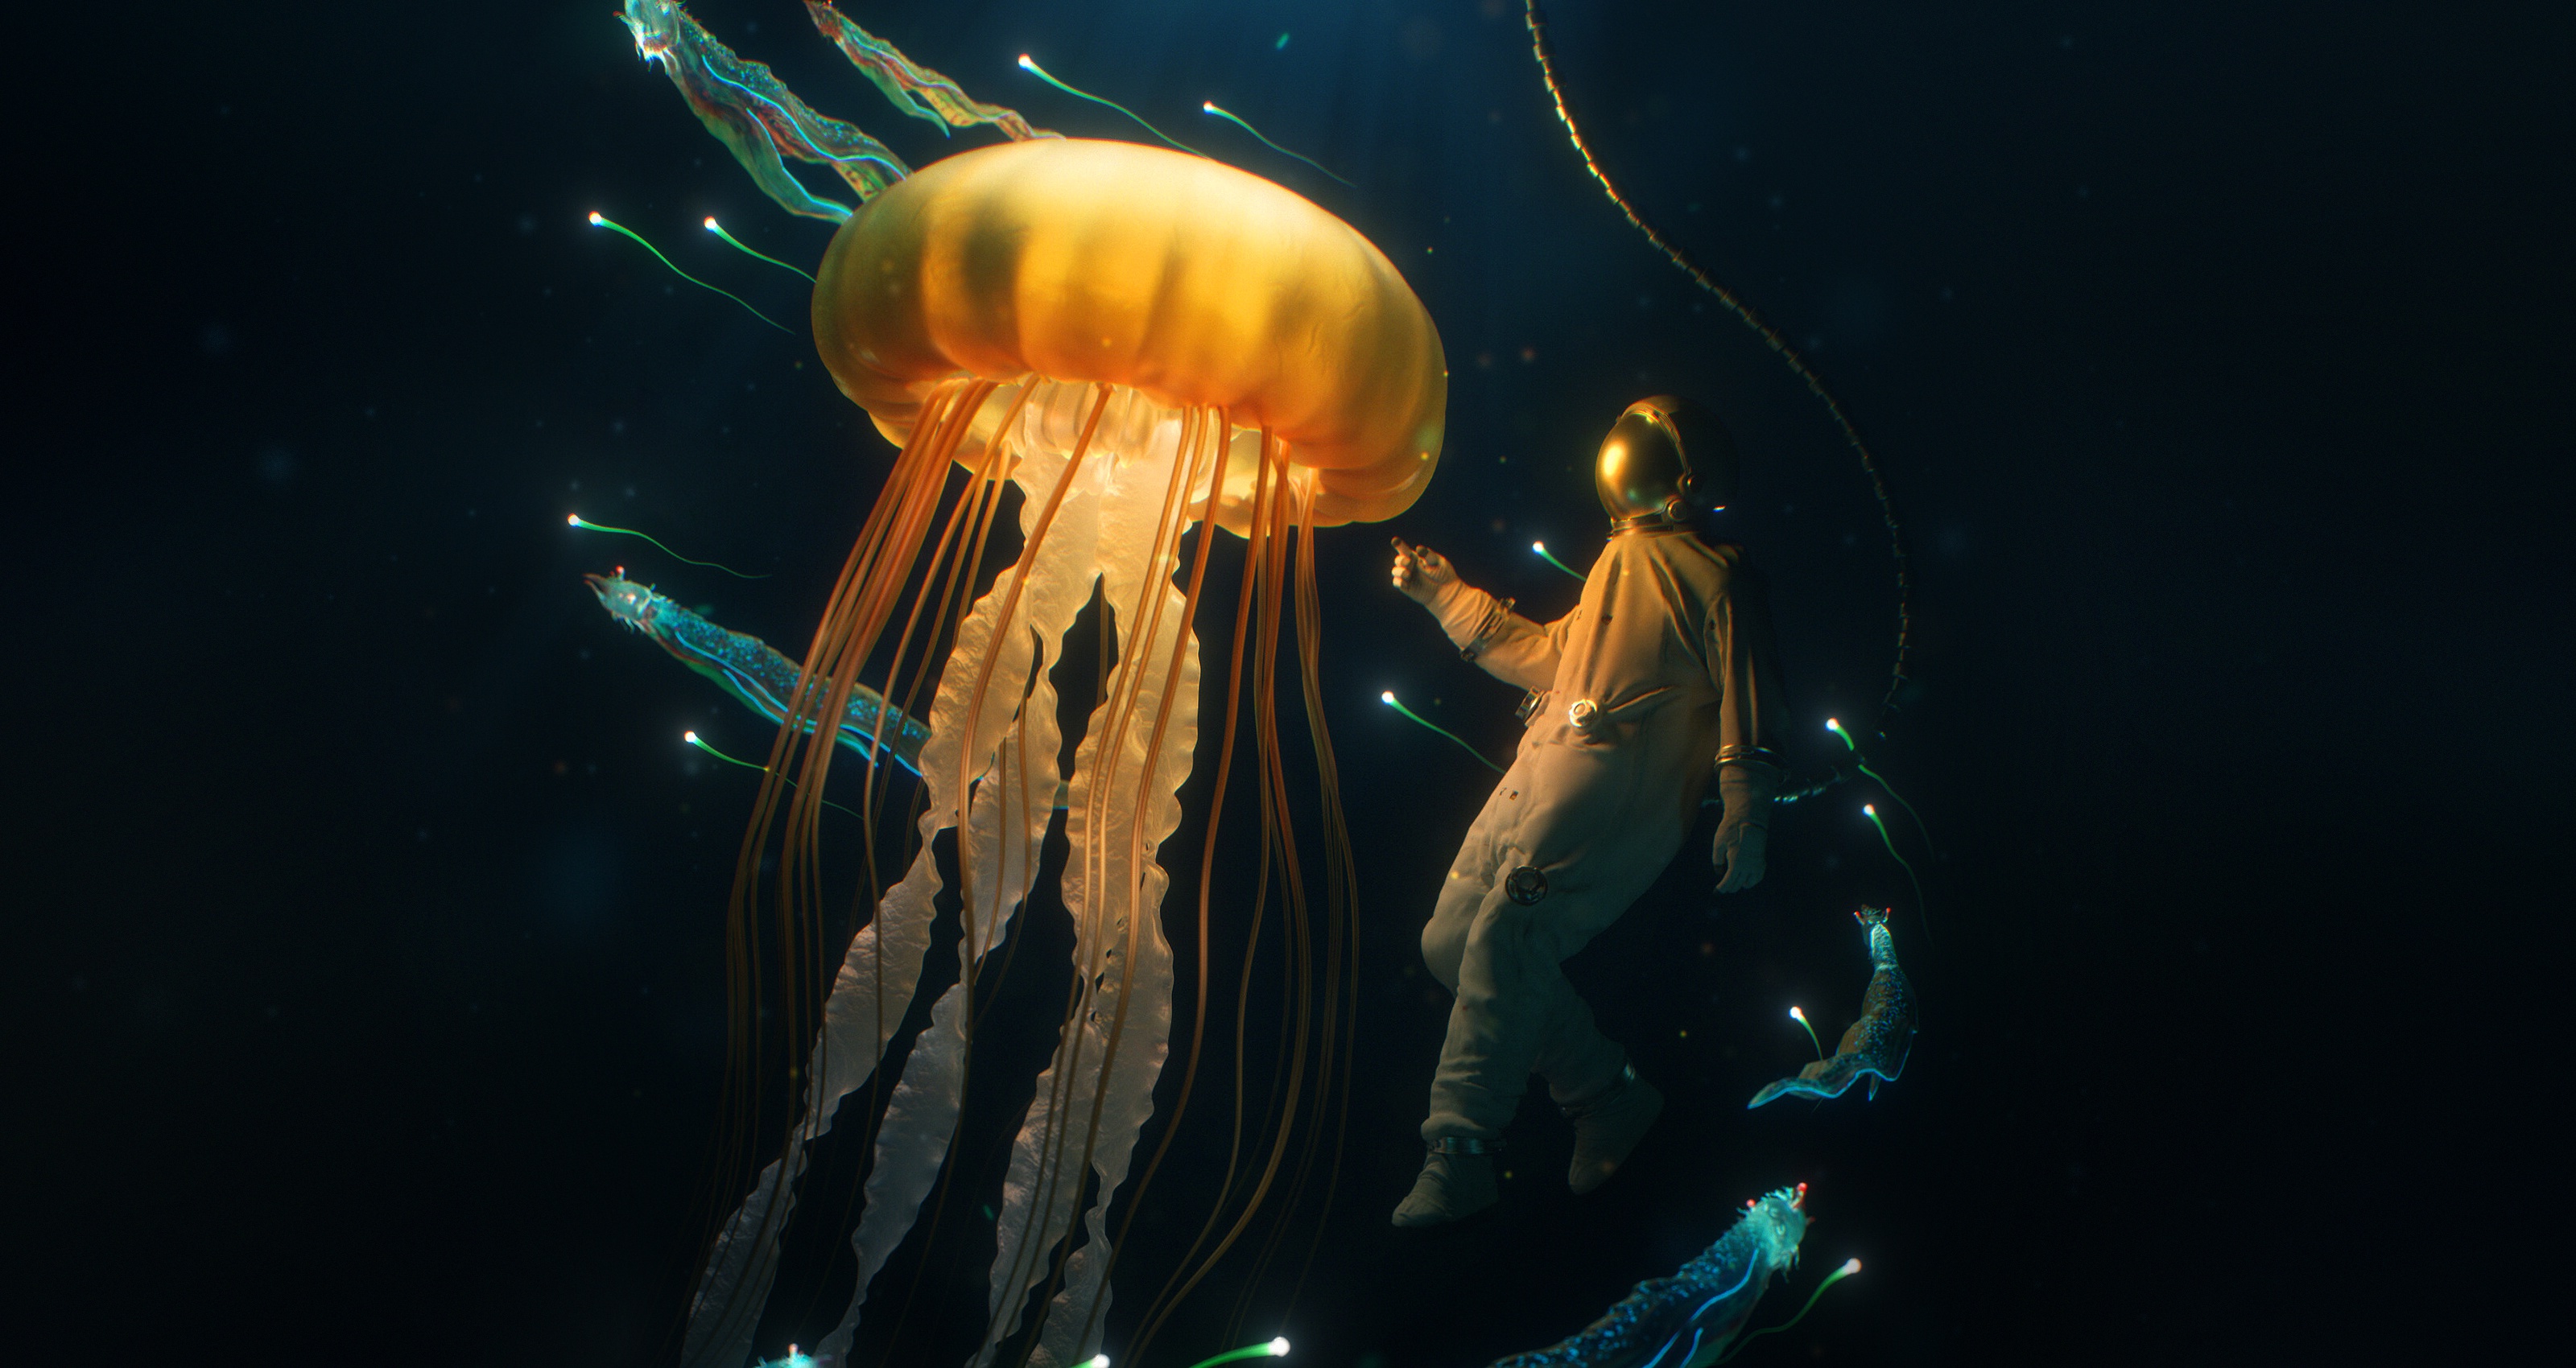 Diver Jellyfish Underwater 3200x1700